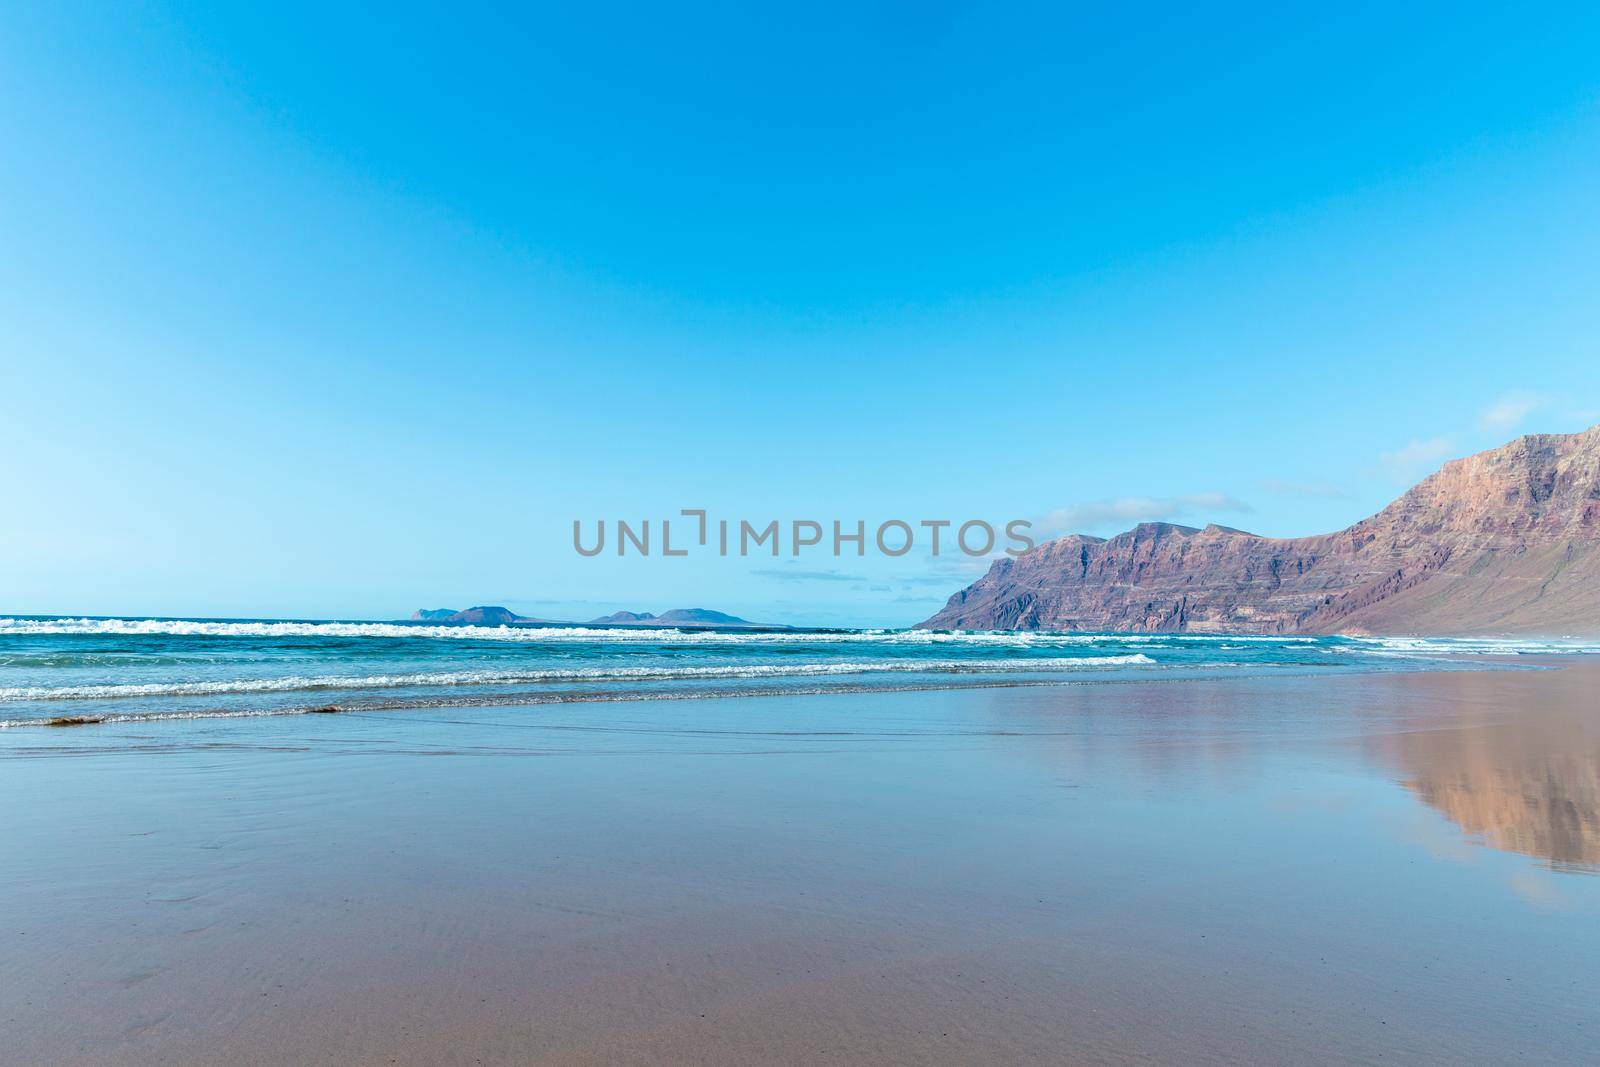 Beach view at Caleta de Famara, Lanzarote. by gitusik